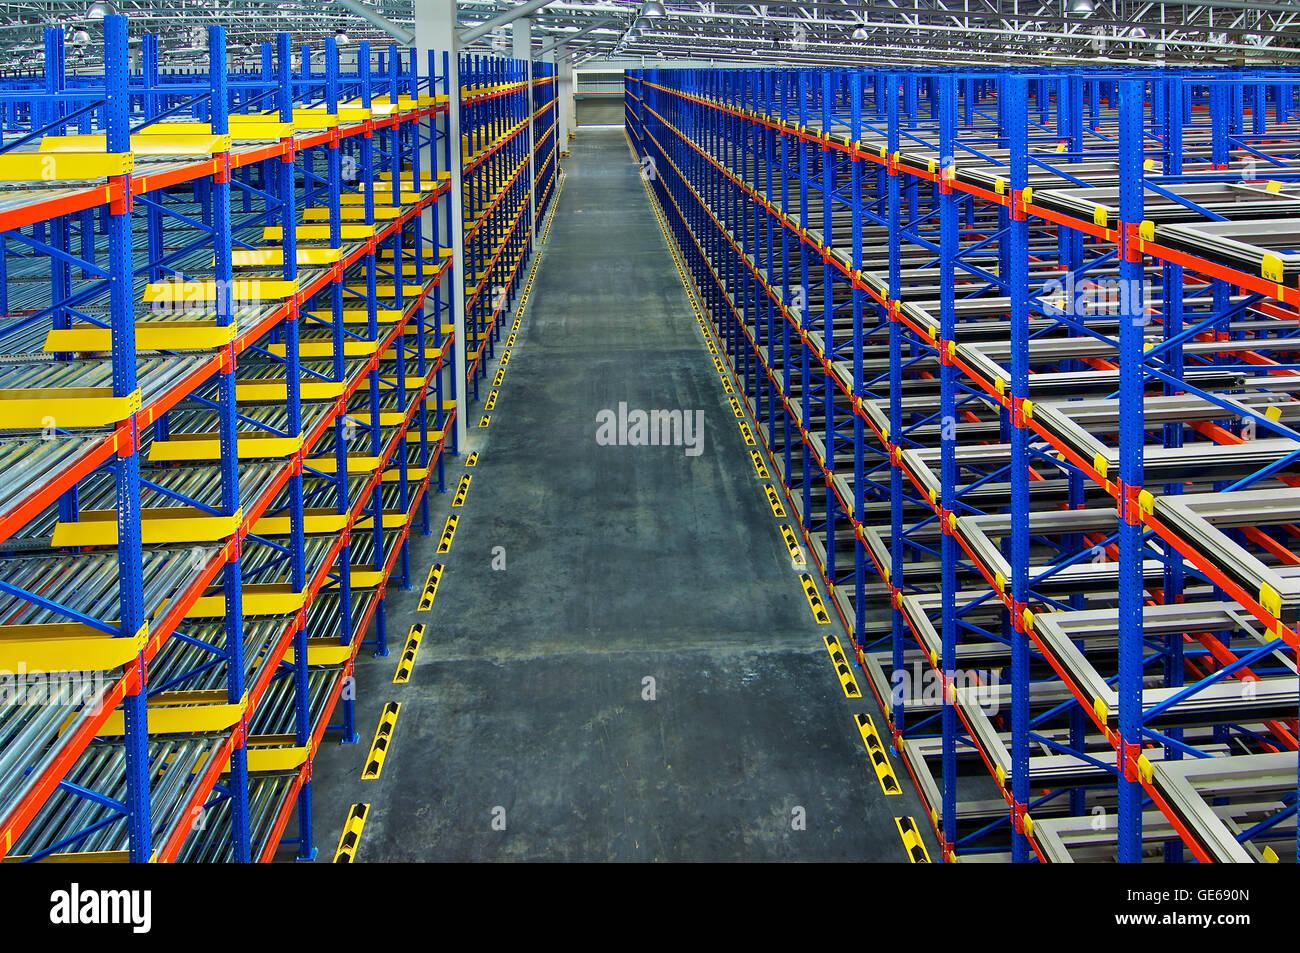 Pallet impianto di scaffalatura di stoccaggio magazzino scaffalature metalliche centro di distribuzione Foto Stock